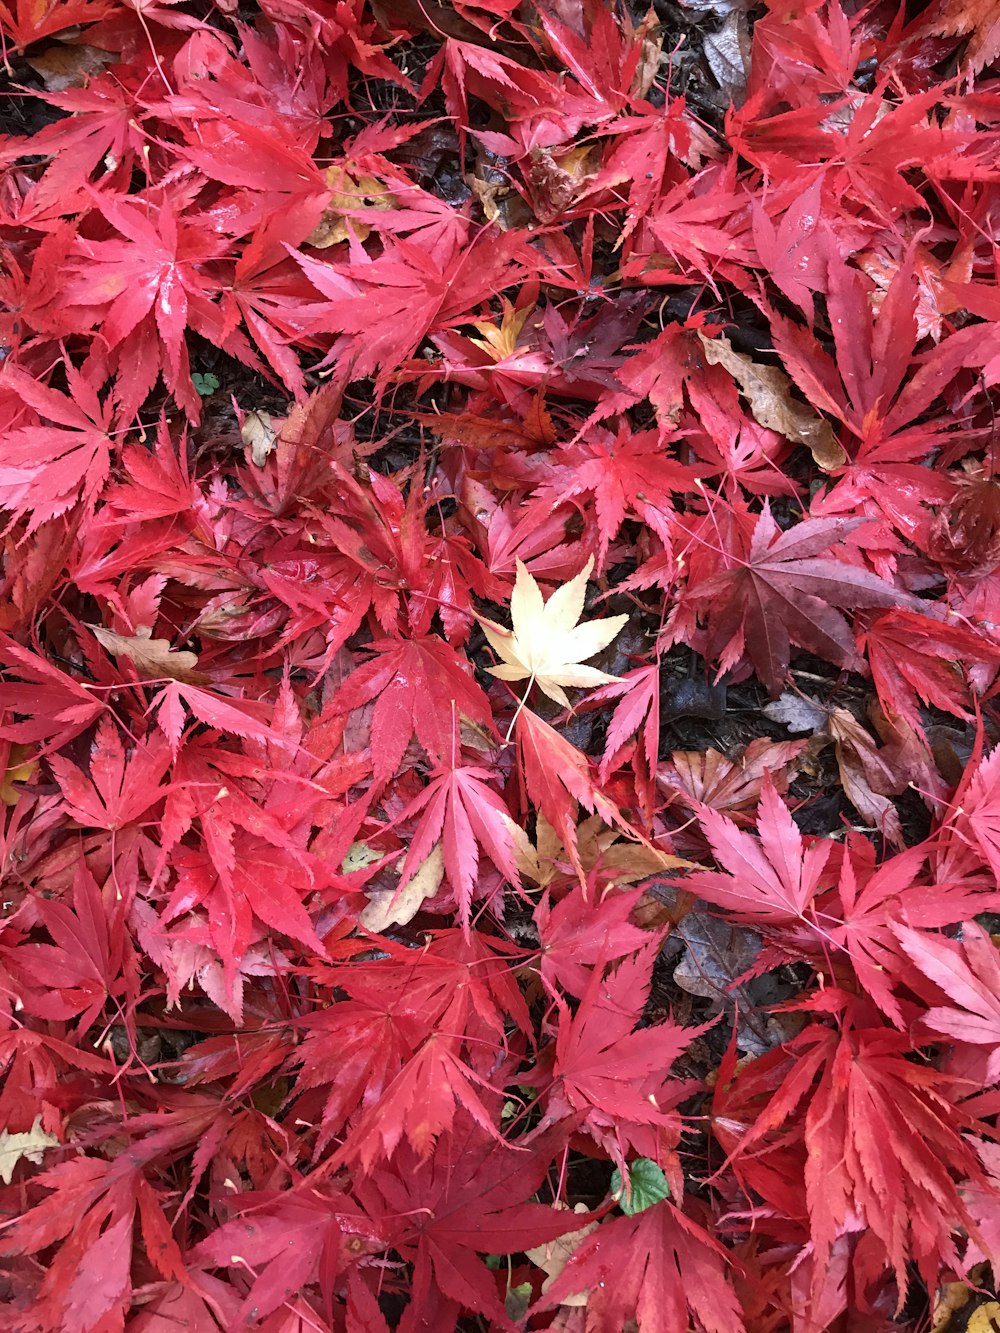 땅에있는 붉은 잎사귀 무리